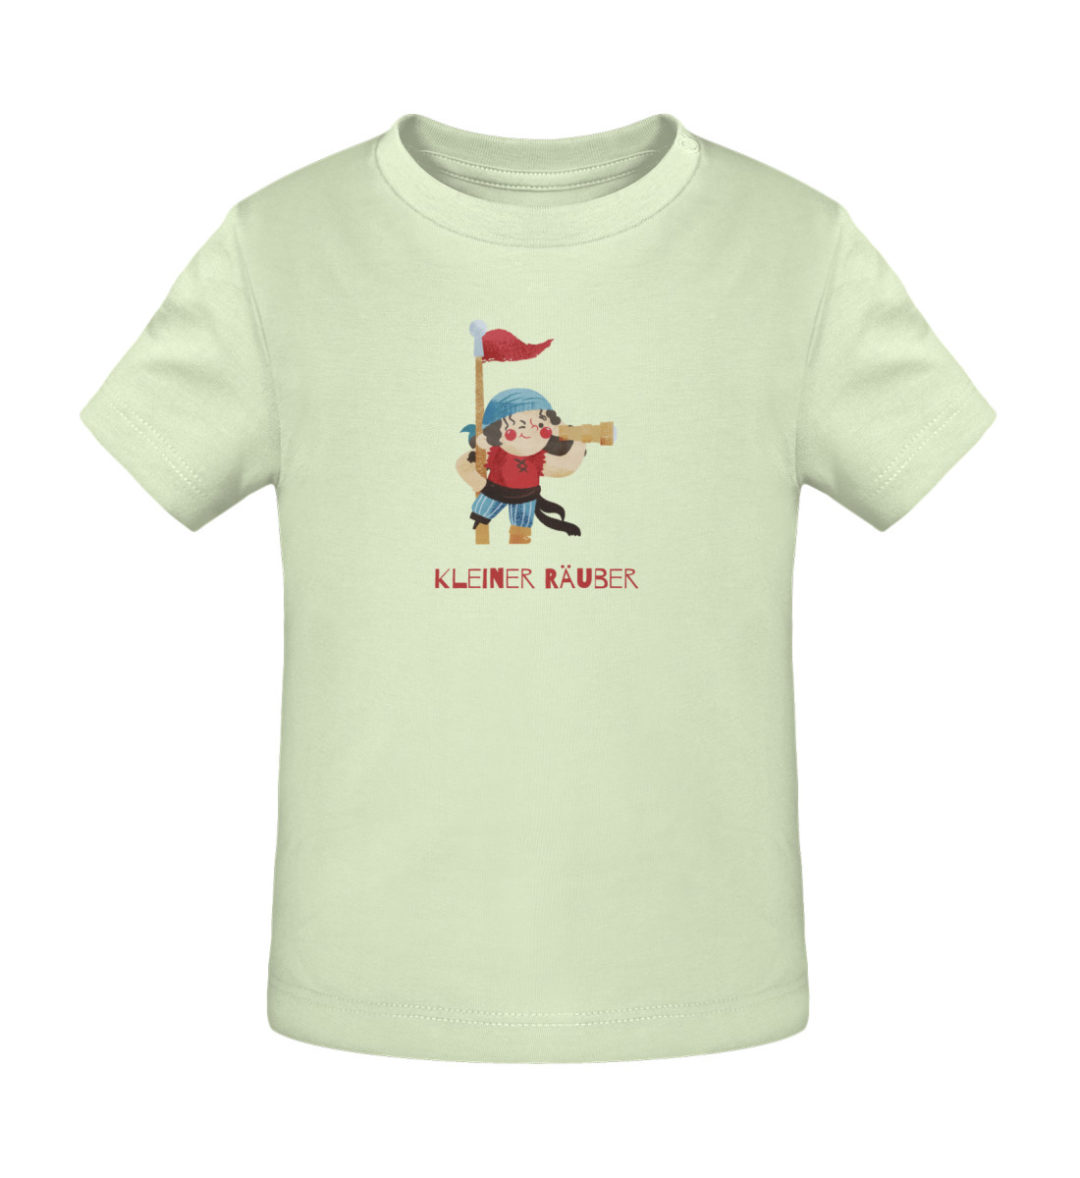 Kleiner Räuber - Baby Creator T-Shirt ST/ST-7105